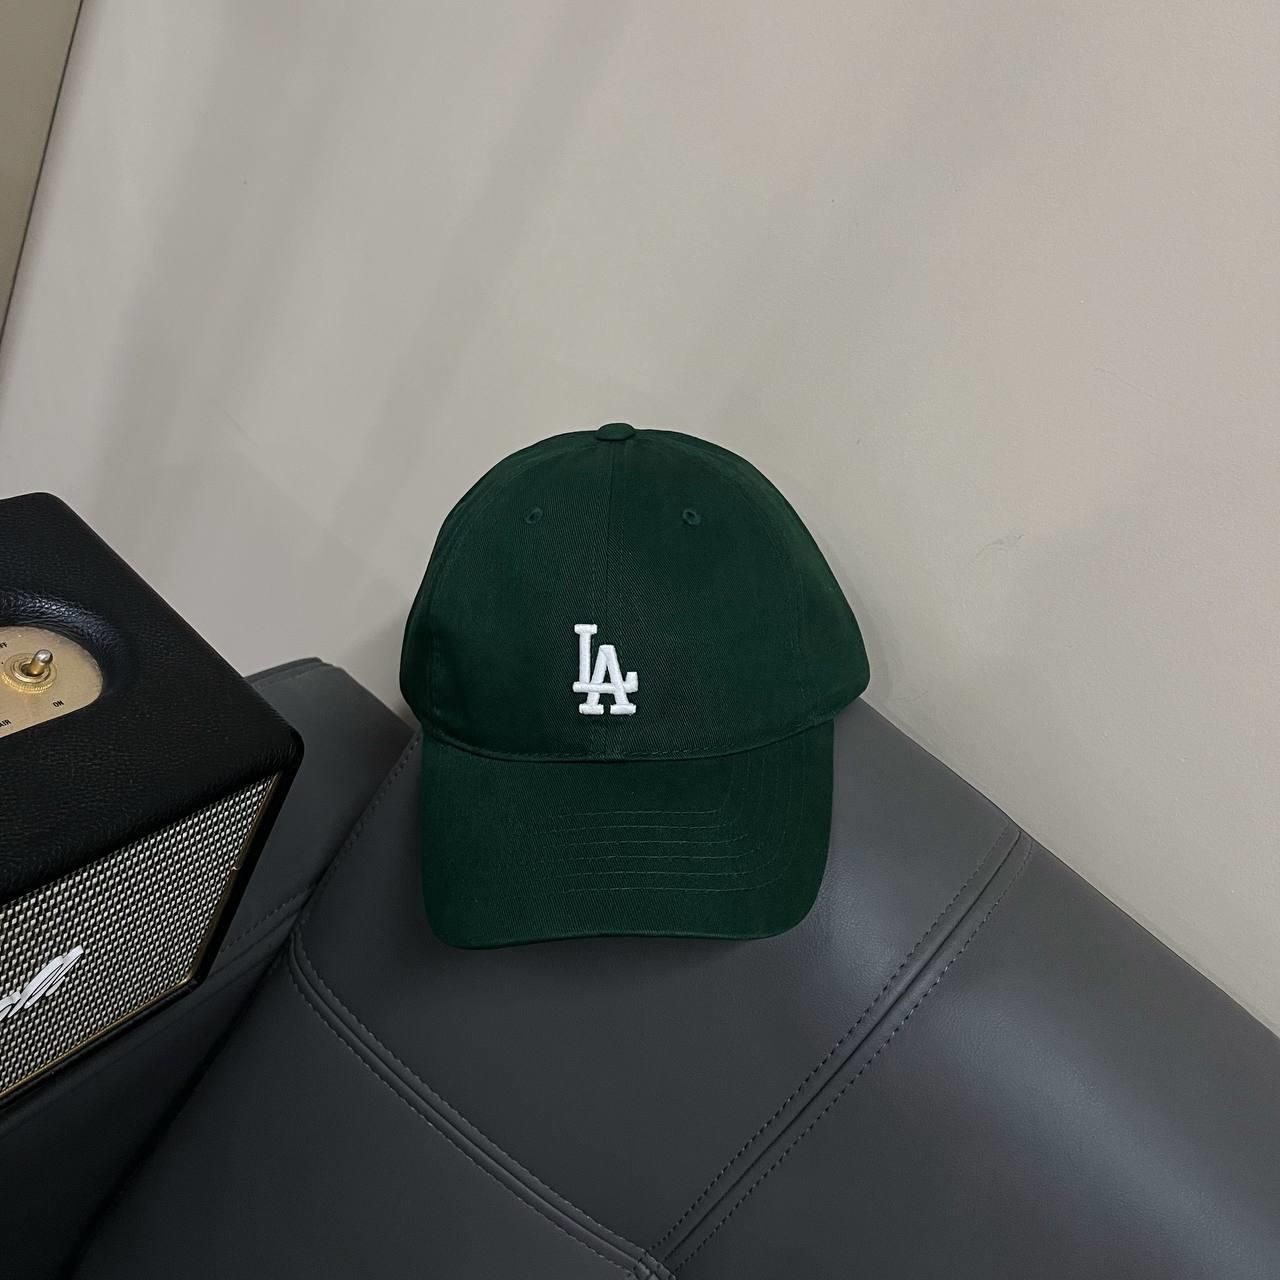 New Era Cap MLB NY Yankees Kelly Green  White Metallic Logo 59FIFTY Hat   eBay